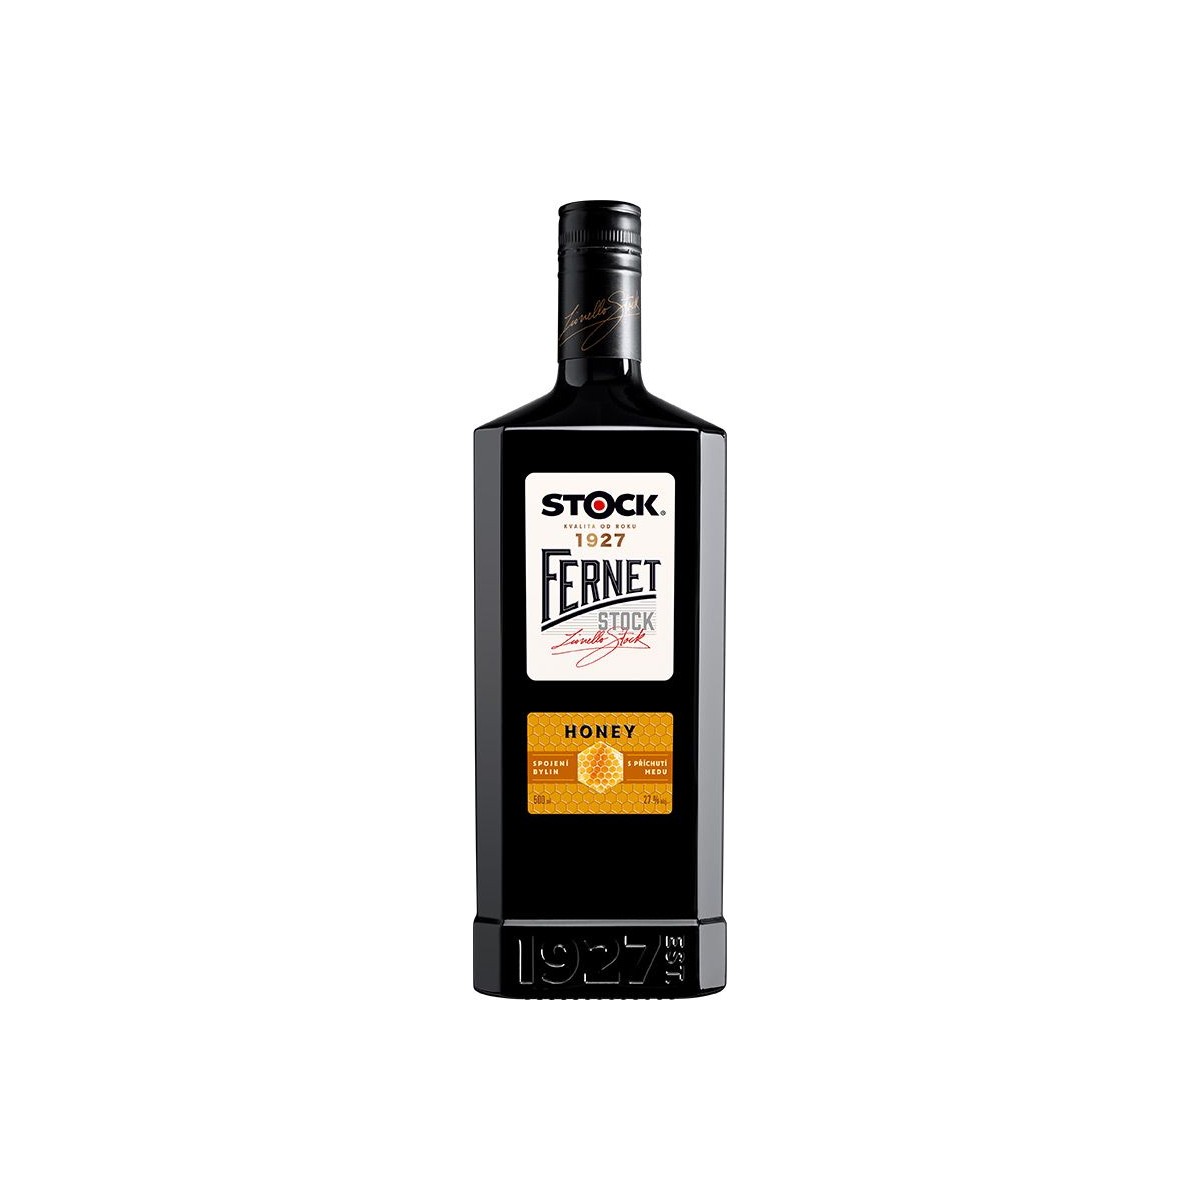 Fernet Stock Honey 0,5l